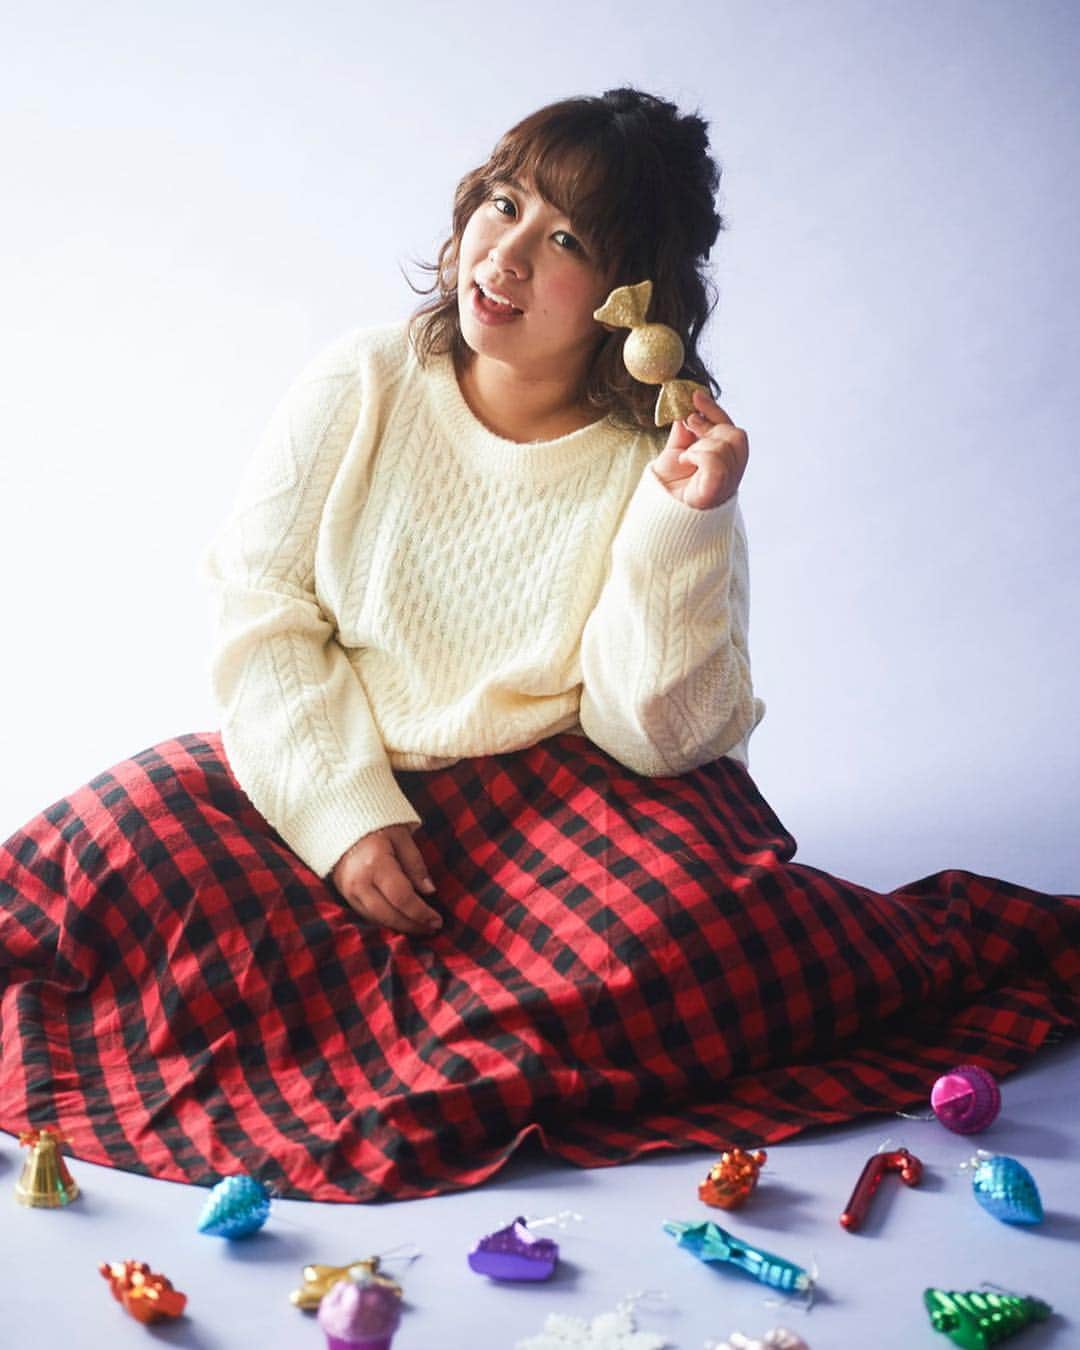 Alinoma公式さんのインスタグラム写真 - (Alinoma公式Instagram)「ㅤㅤㅤㅤㅤㅤㅤㅤㅤㅤㅤㅤㅤㅤㅤㅤㅤㅤㅤㅤㅤㅤㅤㅤㅤㅤ ■Alinomaのクリスマスコーデ ㅤㅤㅤㅤㅤㅤㅤㅤㅤㅤㅤㅤㅤ 白いニットに赤のチェックスカートのコーデ。 ㅤㅤㅤㅤㅤㅤㅤㅤㅤㅤㅤㅤㅤ チェックのスカートがクリスマスらしく、より一層可愛らしいガーリーコーデに🎀 かわいいだけでなく、寒さ対策もばっちりです😆✨ ㅤㅤㅤㅤㅤㅤㅤㅤㅤㅤㅤㅤㅤ ㅤㅤㅤㅤㅤㅤㅤㅤㅤㅤㅤㅤ ㅤㅤㅤㅤㅤㅤㅤㅤㅤㅤㅤㅤㅤ ㅤㅤㅤㅤㅤㅤㅤㅤㅤㅤㅤㅤㅤ ————*coordinate *———— ㅤㅤㅤㅤㅤㅤㅤㅤㅤㅤㅤㅤㅤ ＊ニット : #eur3 →LL〜5L ㅤㅤㅤㅤㅤㅤㅤㅤㅤㅤㅤㅤㅤ ＊スカート : #ArancioAran →LLㅤㅤㅤㅤㅤㅤㅤㅤㅤㅤㅤㅤㅤ ㅤㅤㅤㅤㅤㅤㅤㅤㅤㅤㅤㅤㅤ ——————————————— ㅤㅤㅤㅤㅤㅤㅤㅤㅤㅤㅤㅤㅤ URL 〉〉https://bit.ly/2Gj7D2X ㅤㅤㅤㅤㅤㅤㅤㅤㅤㅤㅤㅤㅤ ——————————————— ㅤㅤㅤㅤㅤㅤㅤㅤㅤㅤㅤㅤㅤㅤㅤㅤㅤㅤㅤㅤㅤㅤㅤㅤㅤㅤㅤㅤㅤ 〉〉モデル 餅田コシヒカリさん @mochi0418 →LL〜3L着用 ㅤㅤㅤㅤㅤㅤㅤㅤㅤㅤㅤㅤㅤ ㅤㅤㅤㅤㅤㅤㅤㅤㅤㅤㅤㅤ——————————————— ㅤㅤㅤㅤㅤㅤㅤㅤㅤㅤㅤㅤㅤ ㅤㅤㅤㅤㅤㅤㅤㅤㅤㅤㅤㅤㅤ ▶︎気になった商品の詳細はプロフィールのURLにありますよ♩ @alinoma_official ㅤㅤㅤㅤㅤㅤㅤㅤㅤㅤㅤㅤㅤㅤㅤㅤㅤㅤㅤㅤㅤㅤㅤㅤㅤㅤ ㅤㅤㅤㅤㅤㅤㅤㅤㅤㅤㅤㅤㅤ #アリノマ  #餅田コシヒカリ #ラファーファ #ぽっちゃり #ぽっちゃりコーデ #ラファコーデ #ウィンターコーデ #カジュアルコーデ #カジュアル #ぽちゃかわ #ニット#チェック #クリスマスコーデ #alinoma  #plussize #winter #lafarfa #plussizemodel #plussizefashion #pochative #code #girl #knit」12月20日 8時37分 - alinoma_official